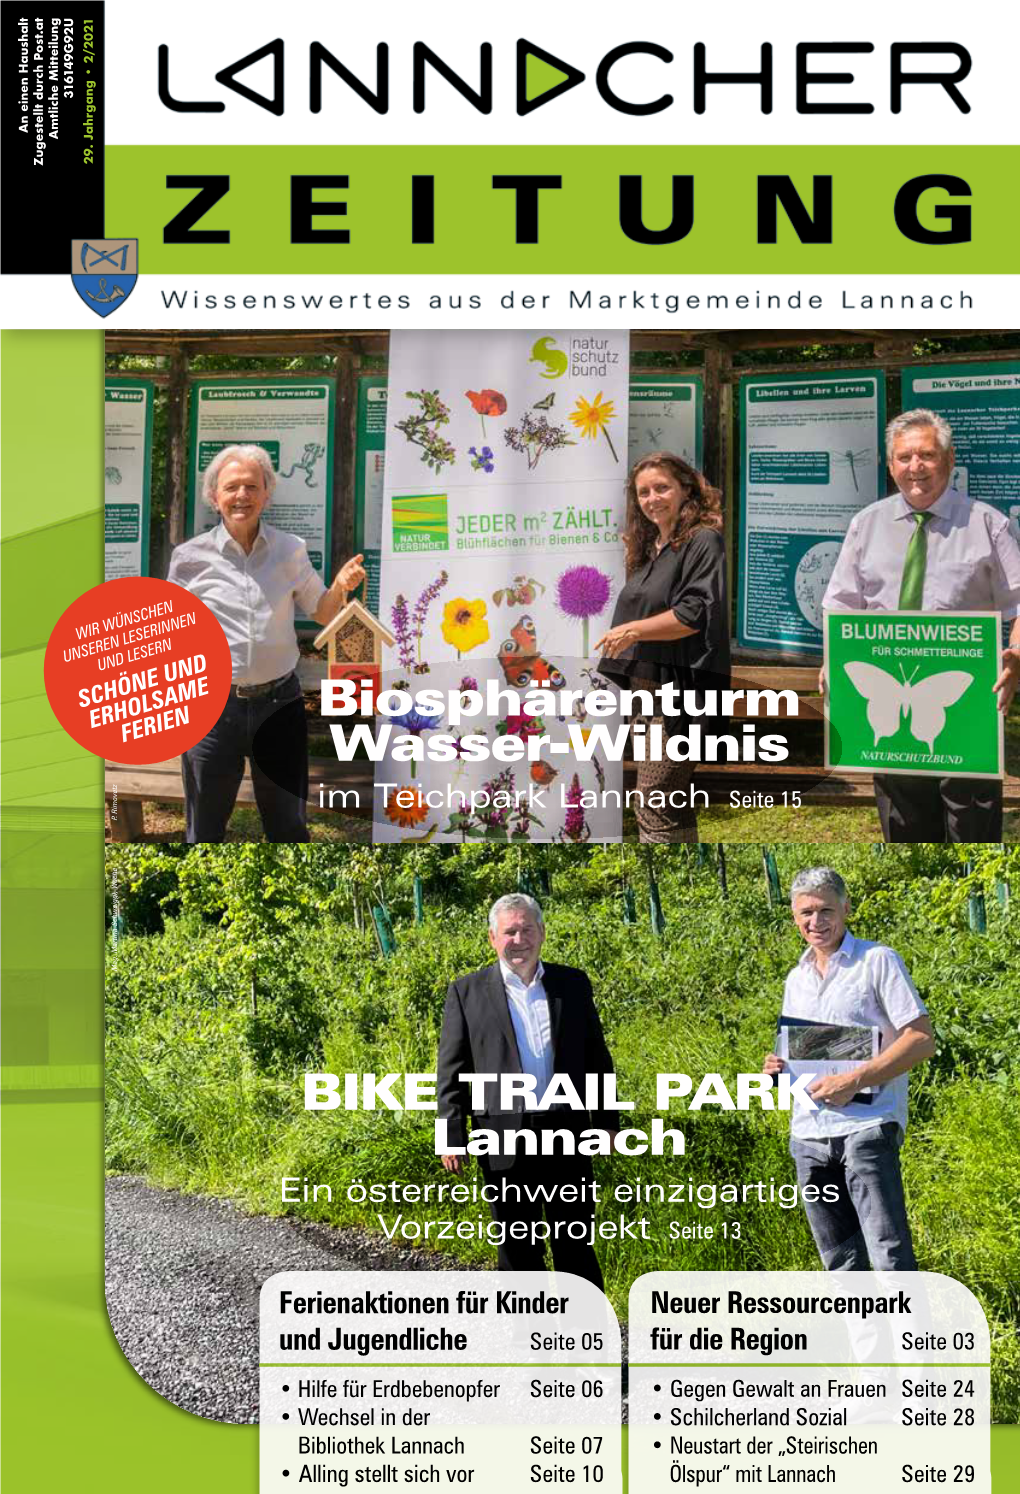 BIKE TRAIL PARK Lannach Biosphärenturm Wasser-Wildnis